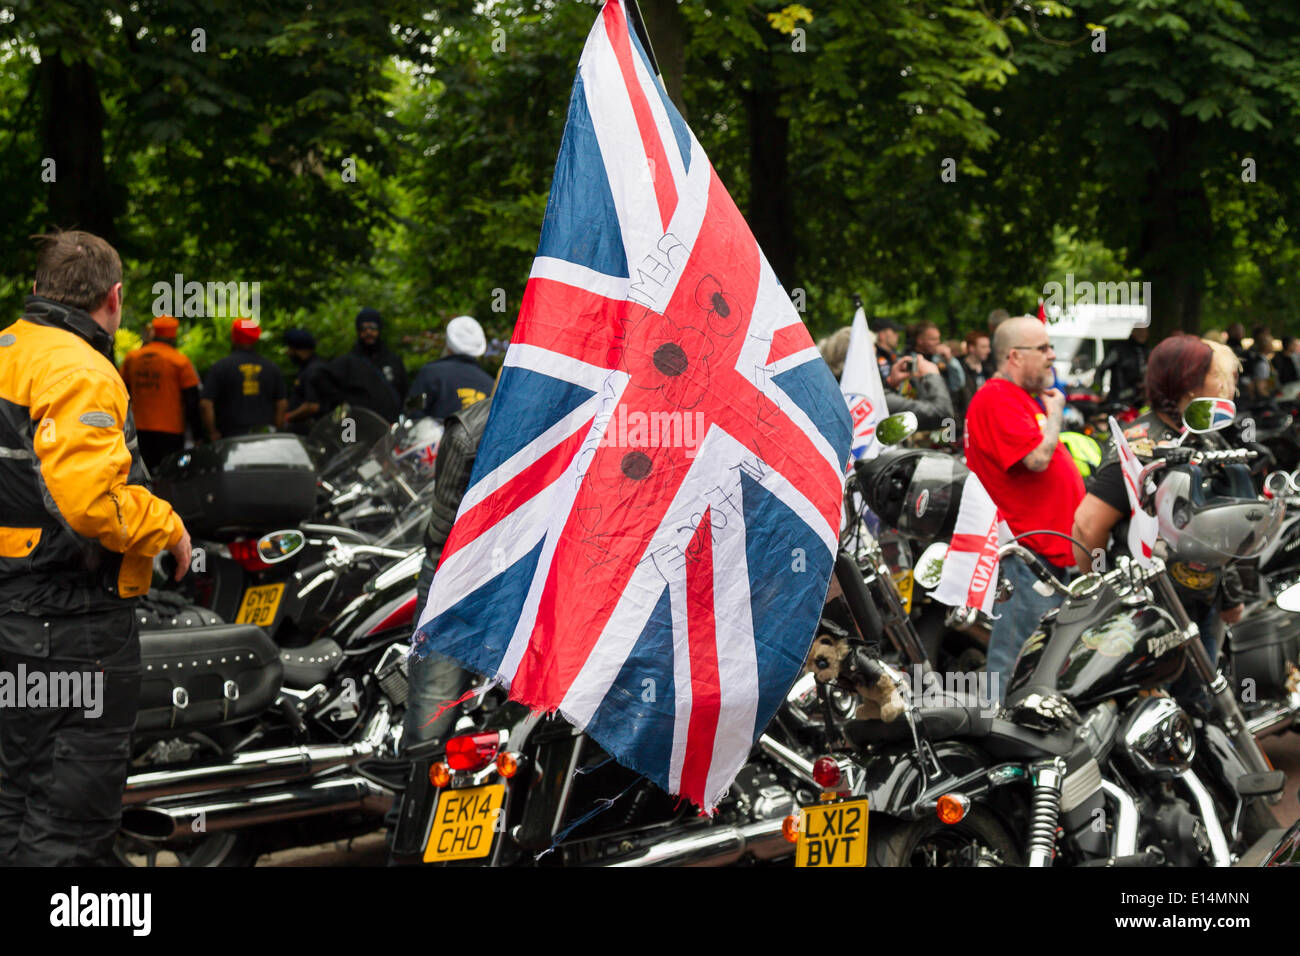 Londra, Inghilterra, 22 maggio ,2014. Un motorcylce visualizzando una bandiera della rimembranza come i motociclisti si riuniranno presso il parco di Greenwich in occasione del primo anniversario dell'assassinio di Fusilier Lee Rigby vicino alla sua Woolwich caserma. Credito: David clacson/Alamy Live News Foto Stock